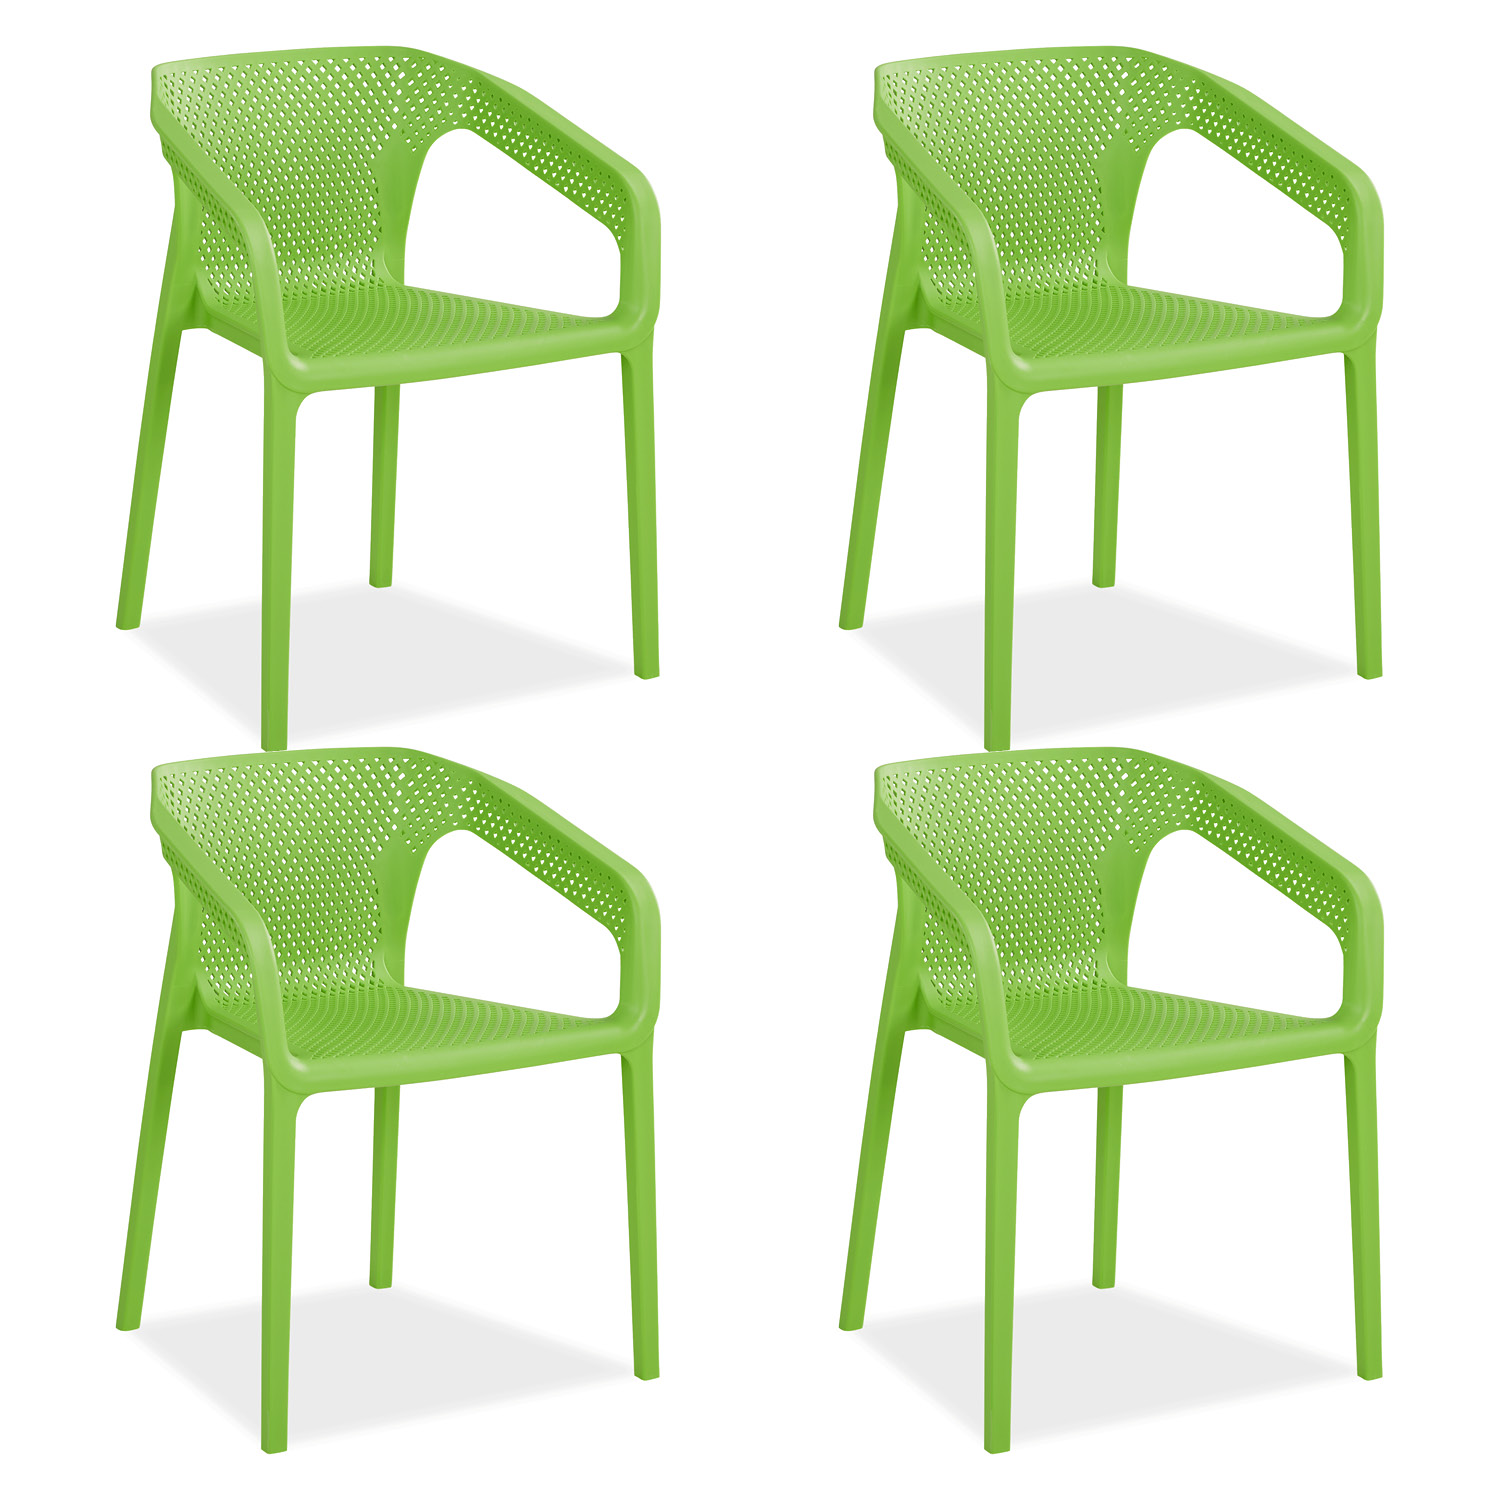 Chaise de jardin avec accoudoirs Vert Lot de 4 Fauteuils de jardin Plastique Chaises exterieur Chaises empilable